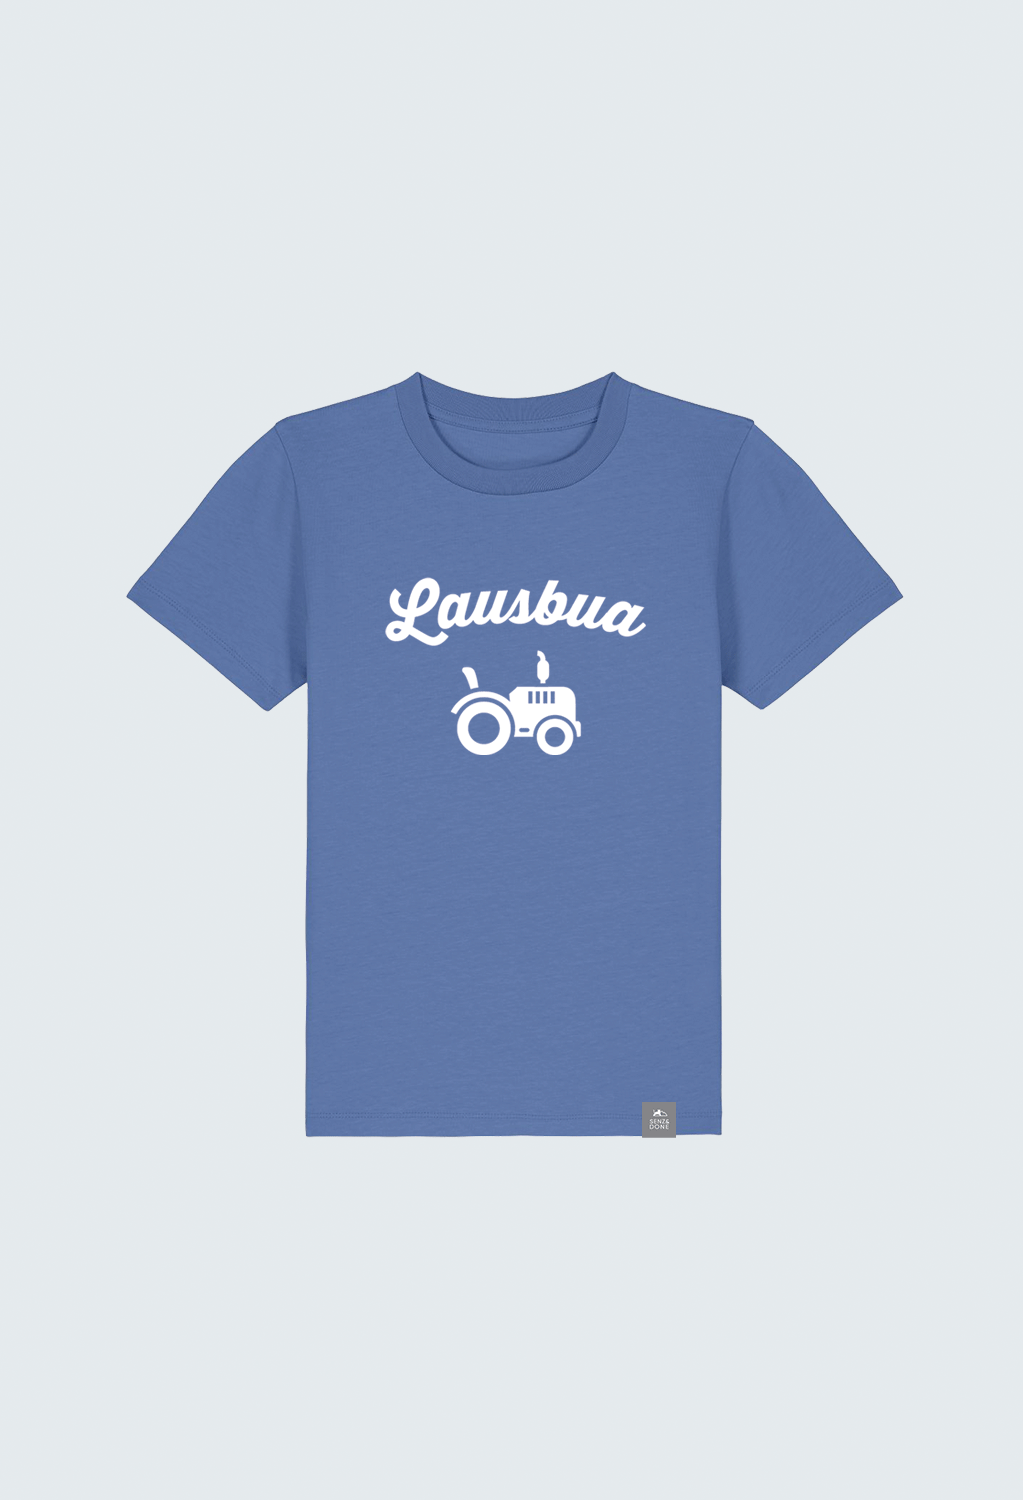 Lausbua T-Shirt